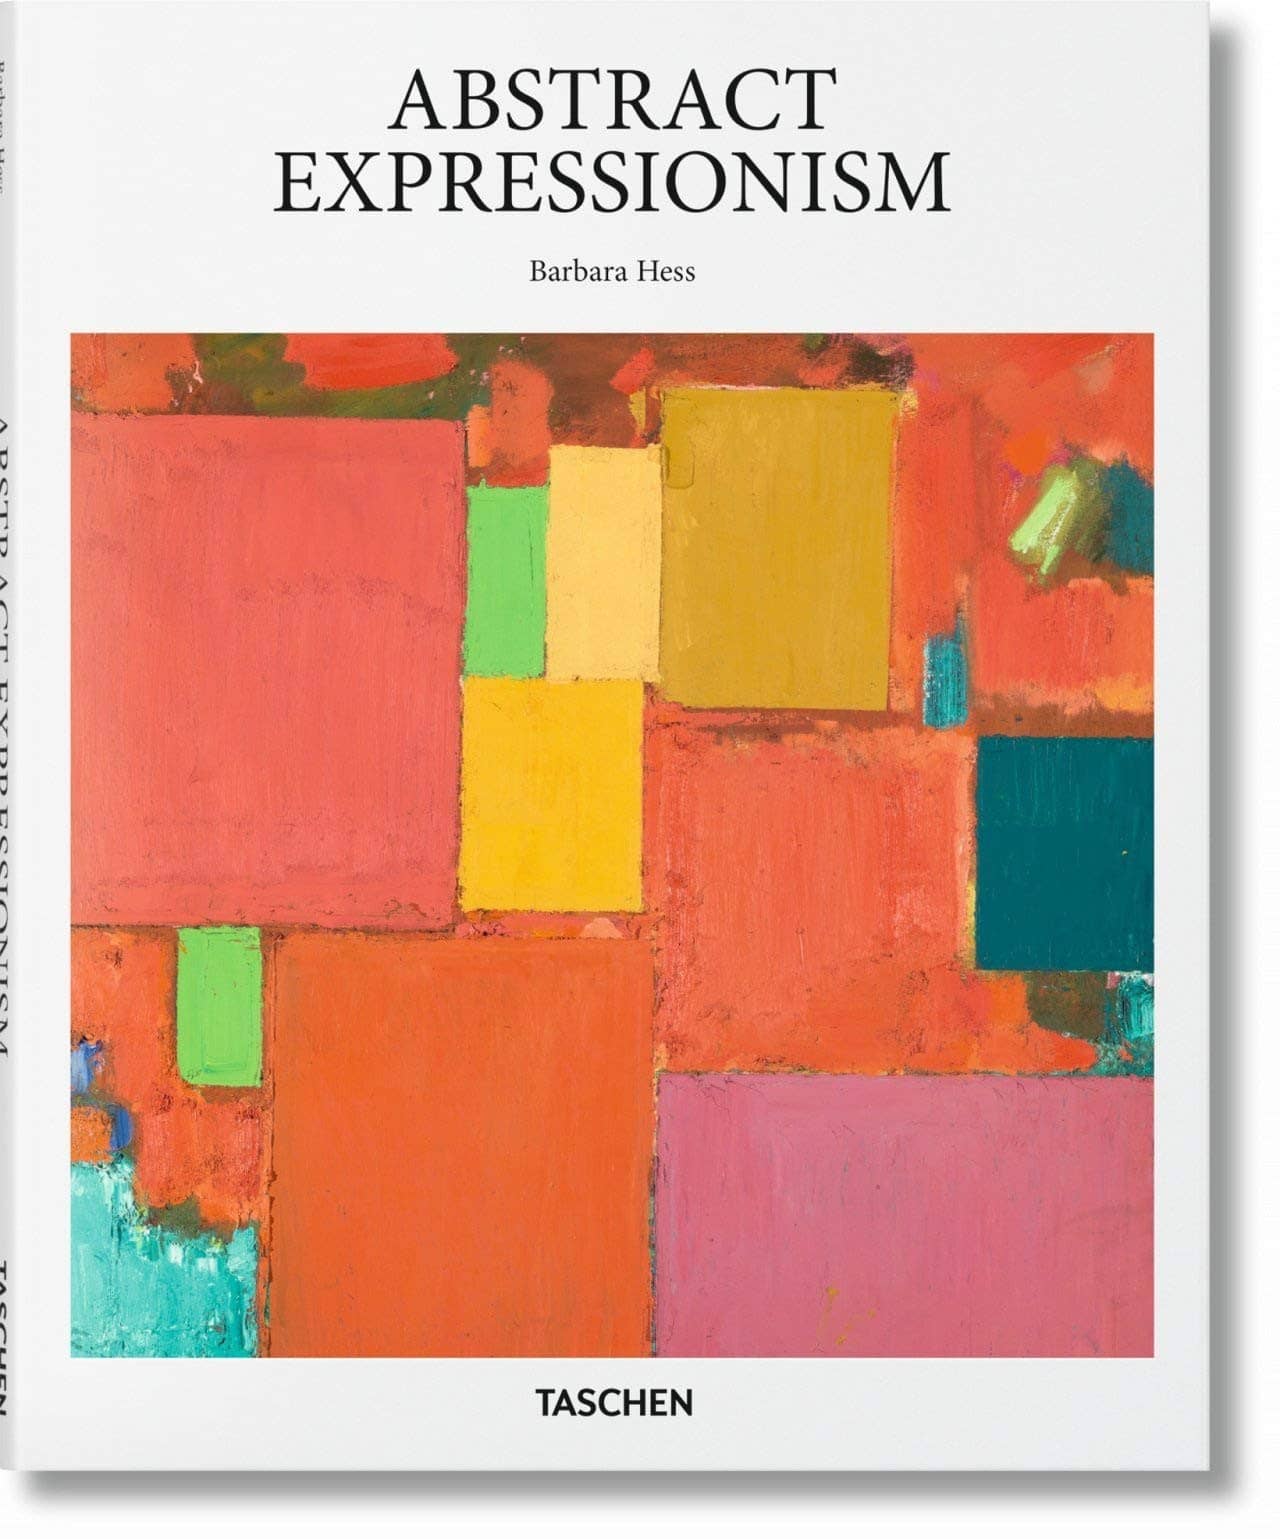 2971-abstract-expressionism-71hffqi6crl-jpg-71hffqi6crl